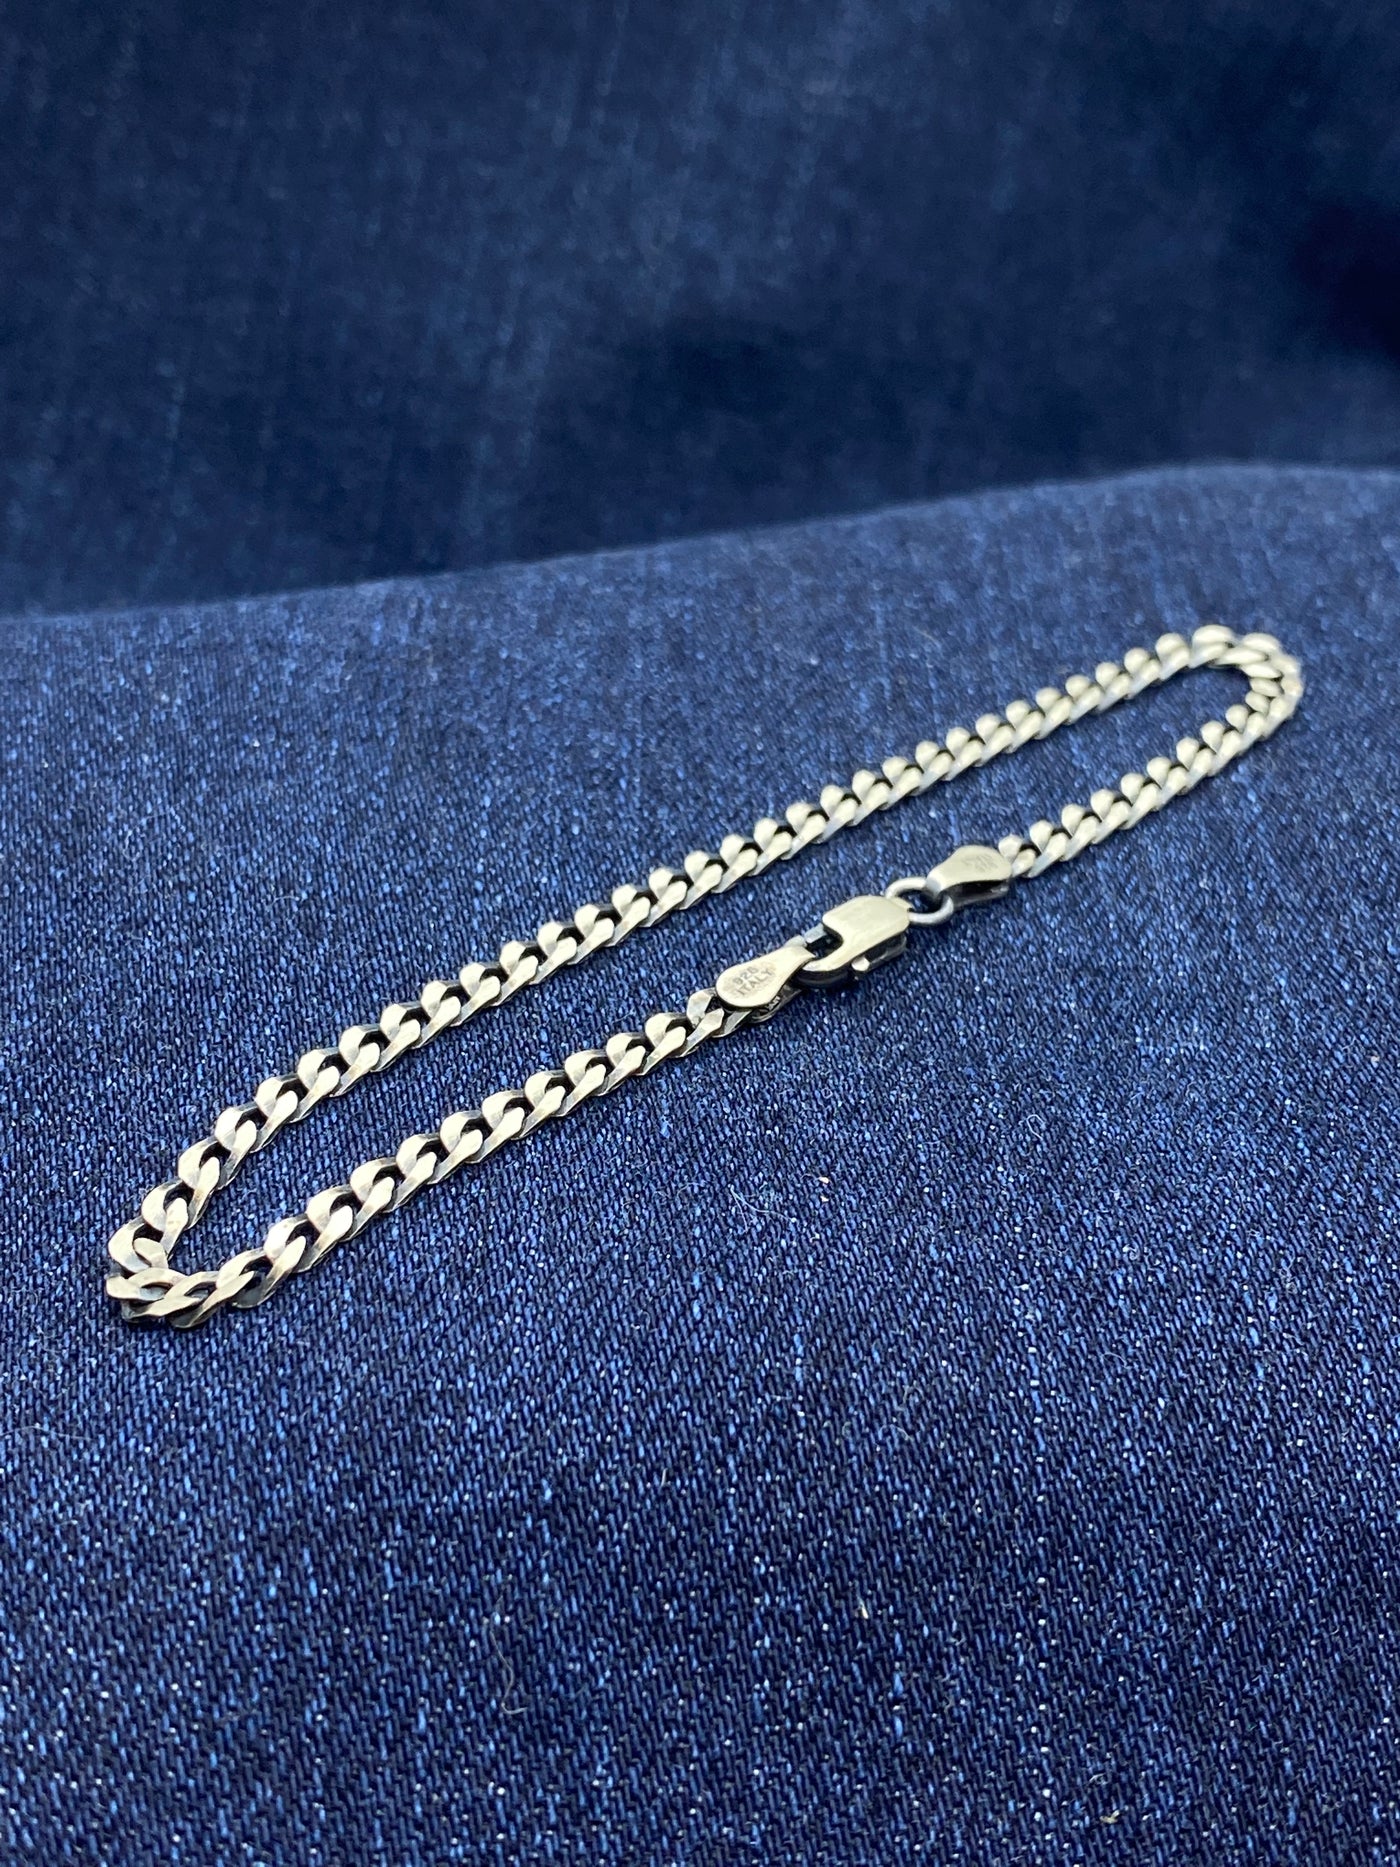 Sterling Silver Flat Cuban Link Chain bracelet